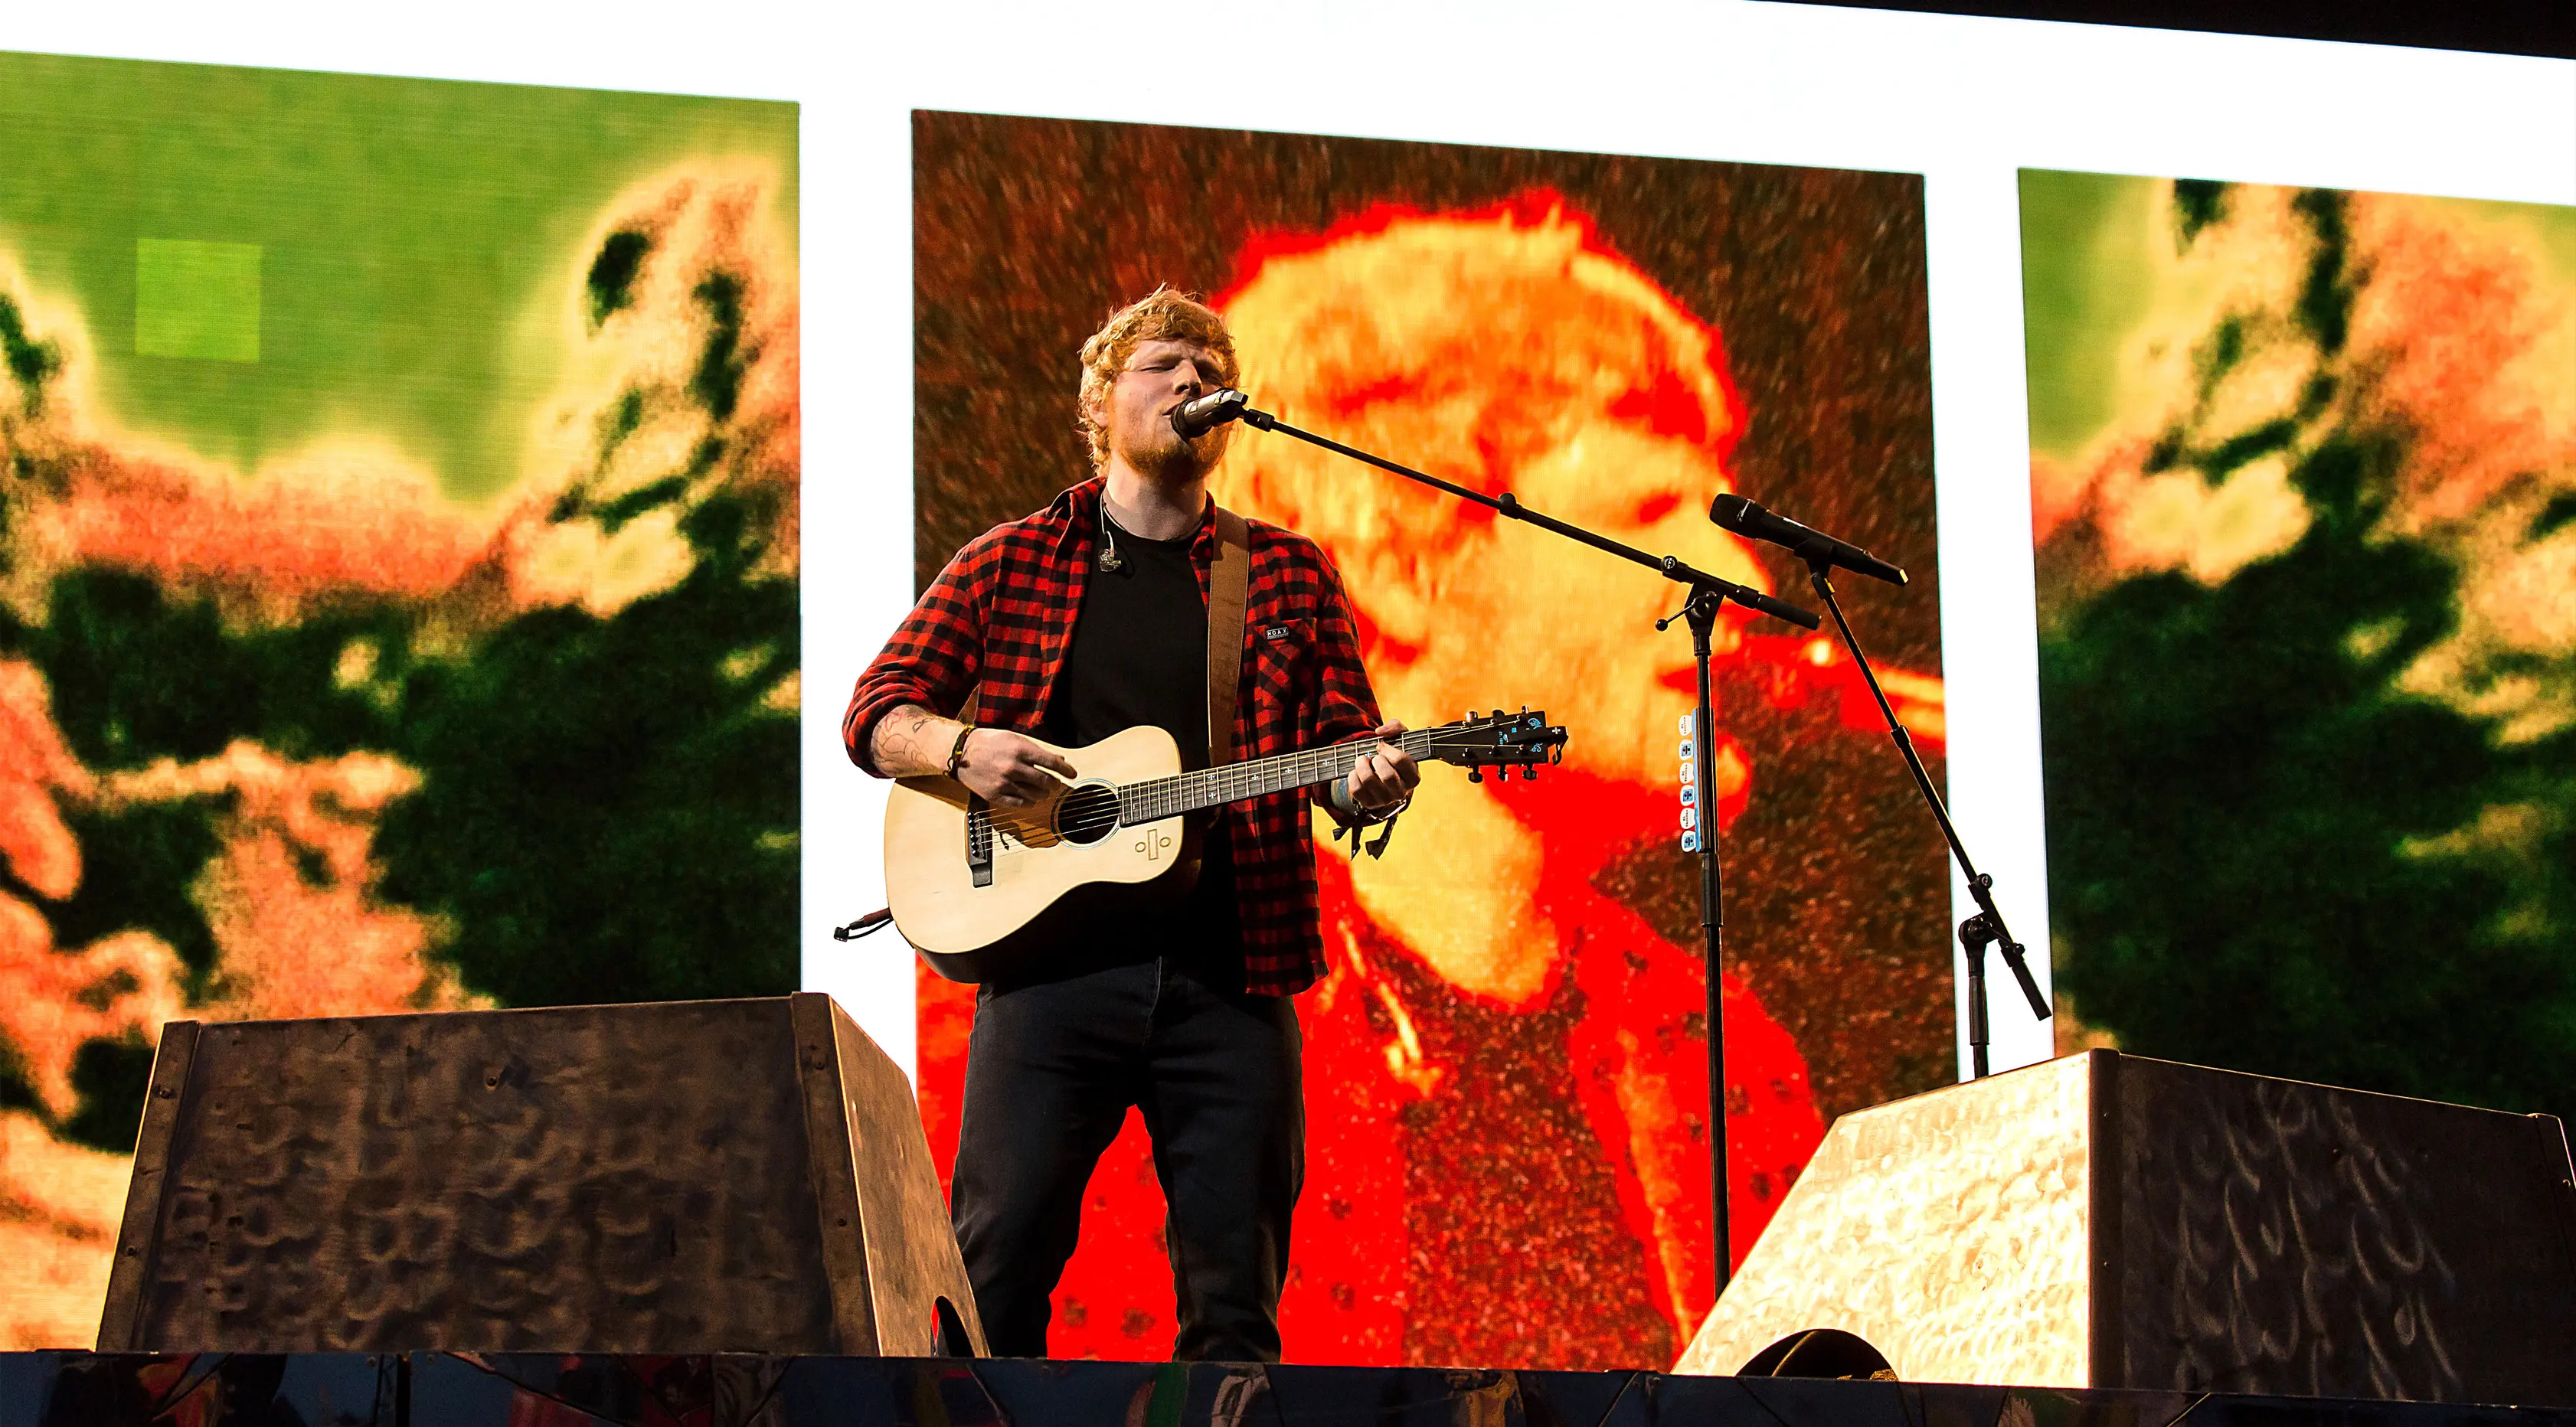 Para penggemar dari Indonesia meminta agar konser Ed Sheeran di Tanah Air dijadwalkan ulang. (Photo by Grant Pollard/Invision/AP)